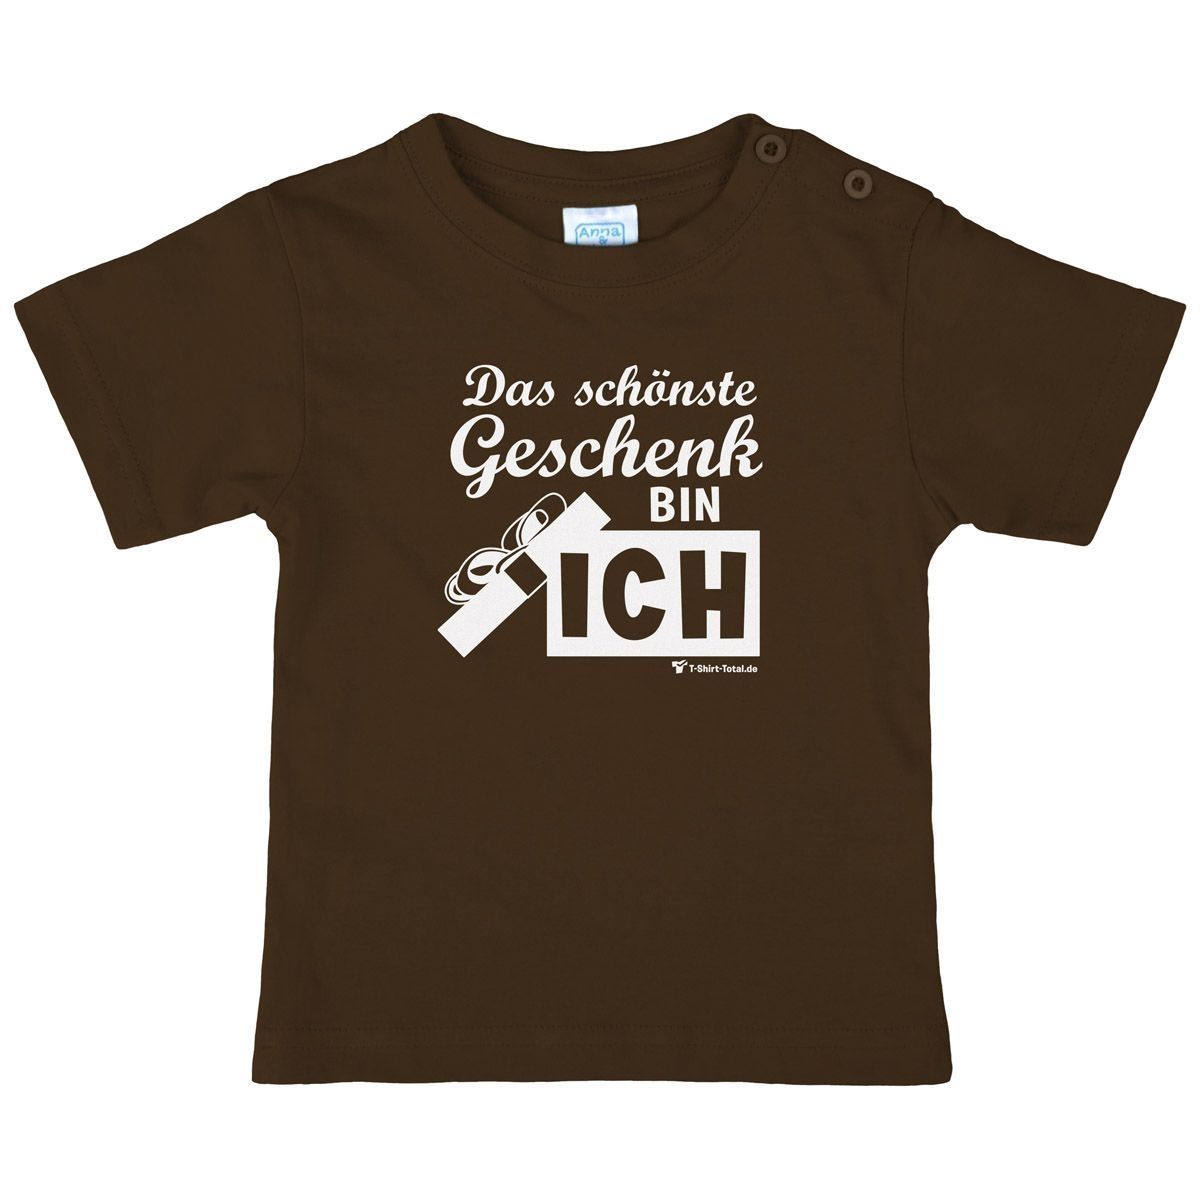 Schönste Geschenk Kinder T-Shirt braun 68 / 74